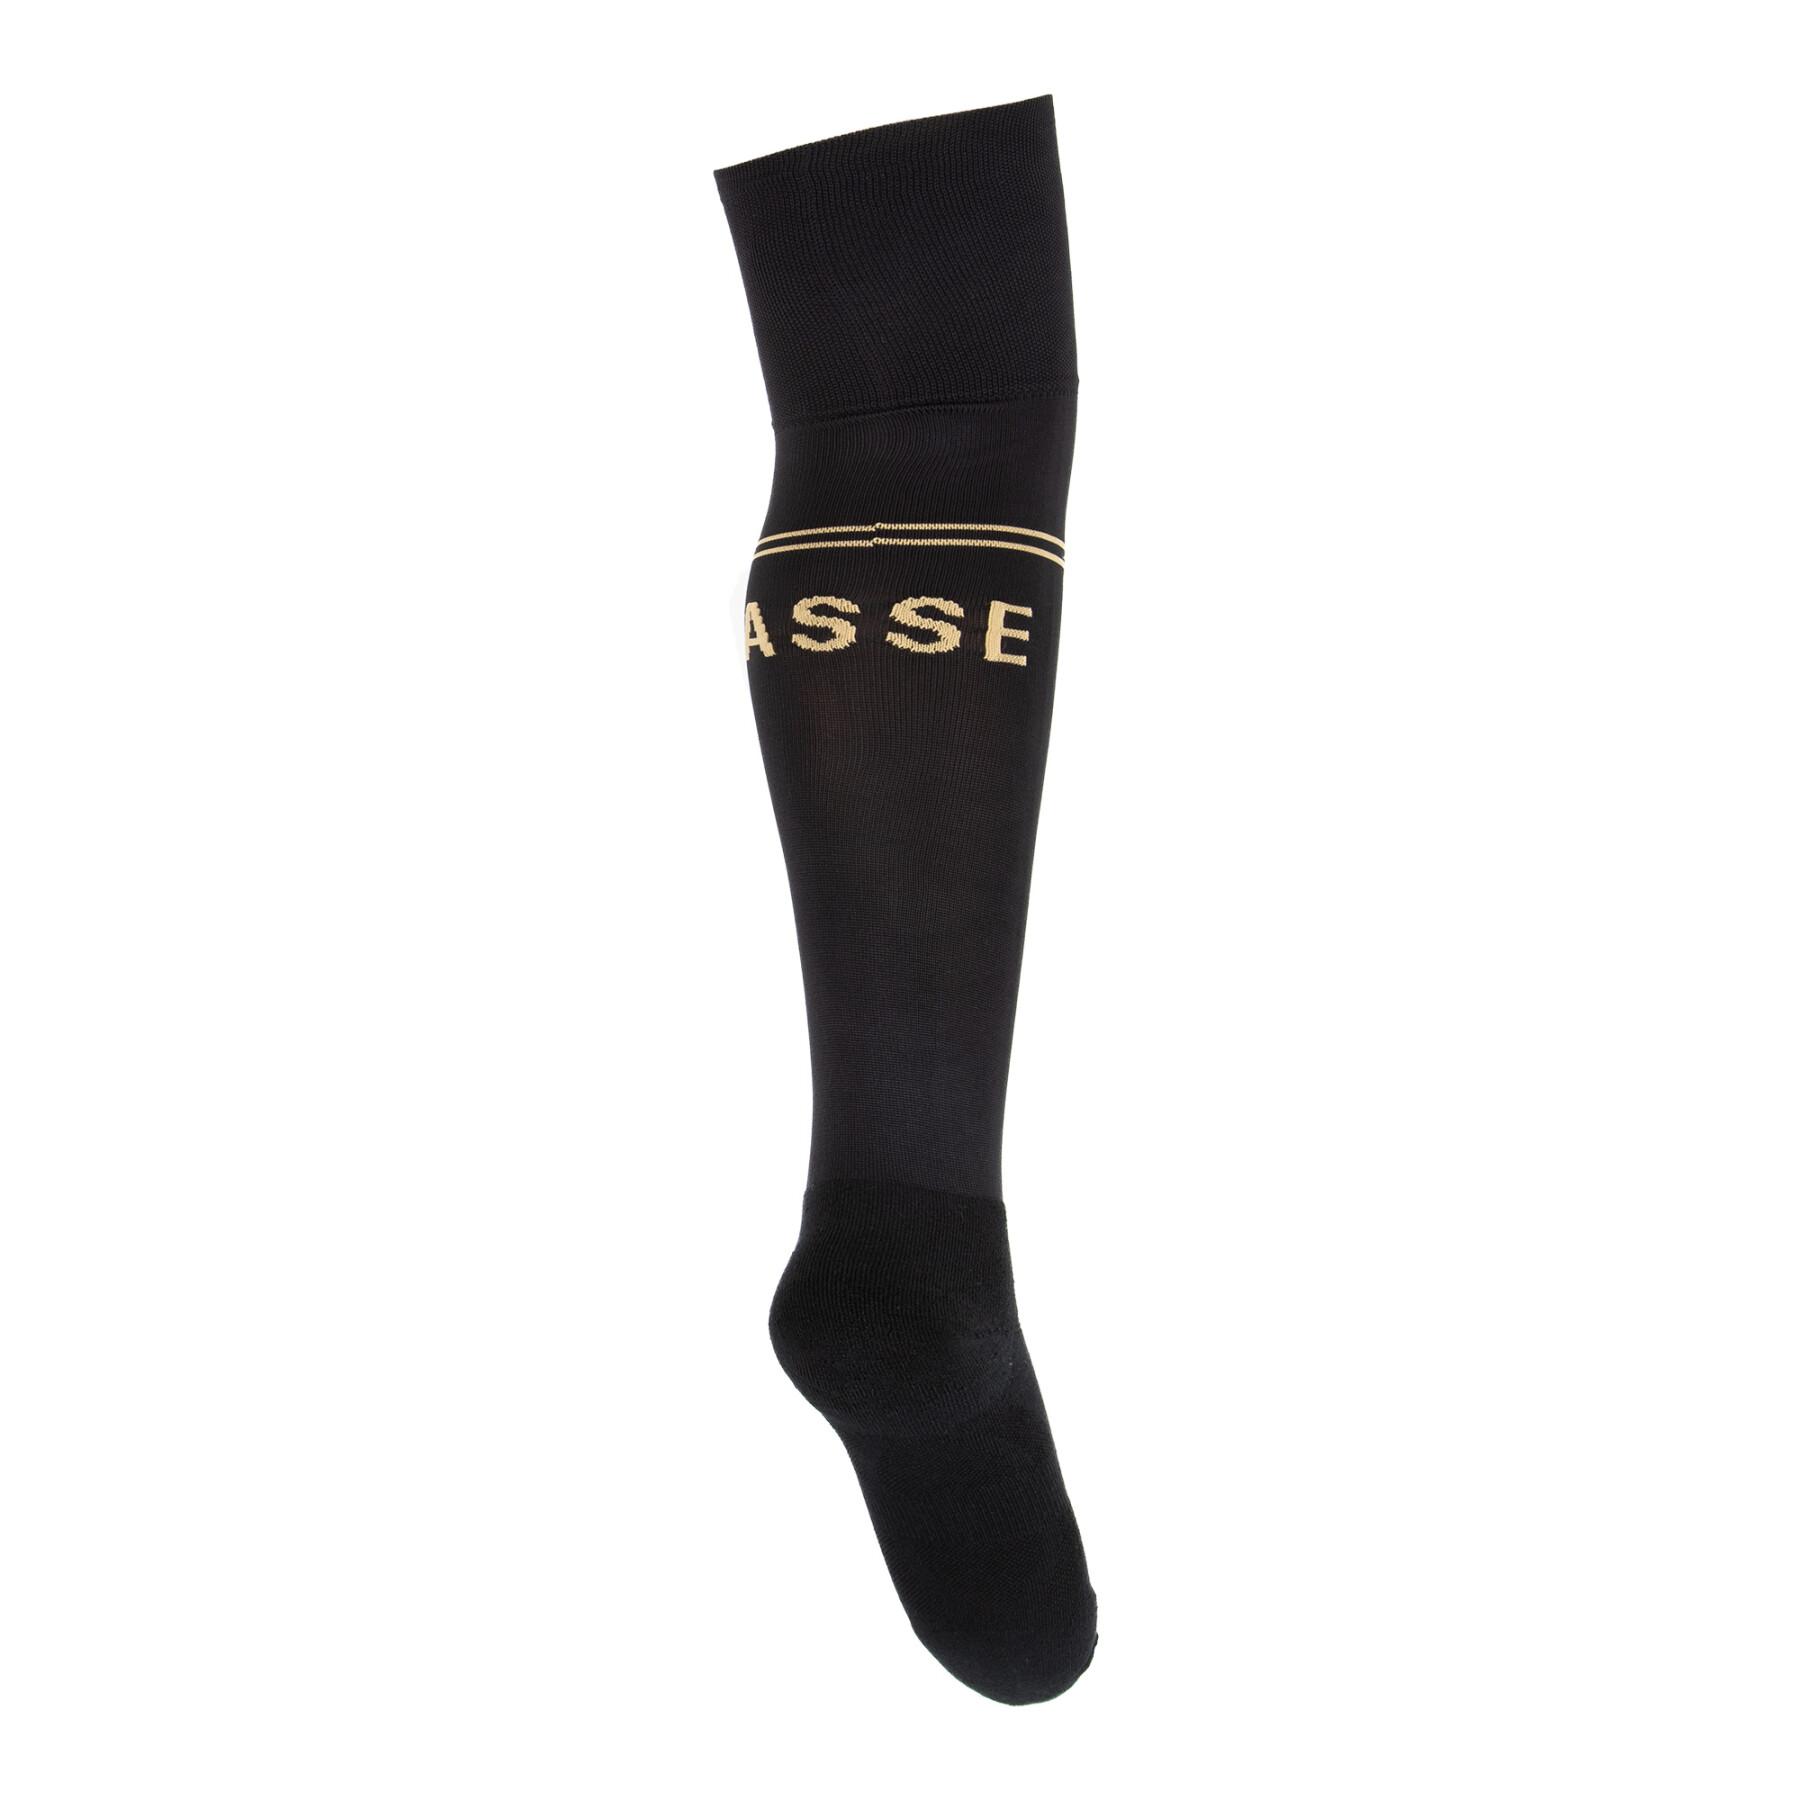 Socks as saint-etienne 2021/22